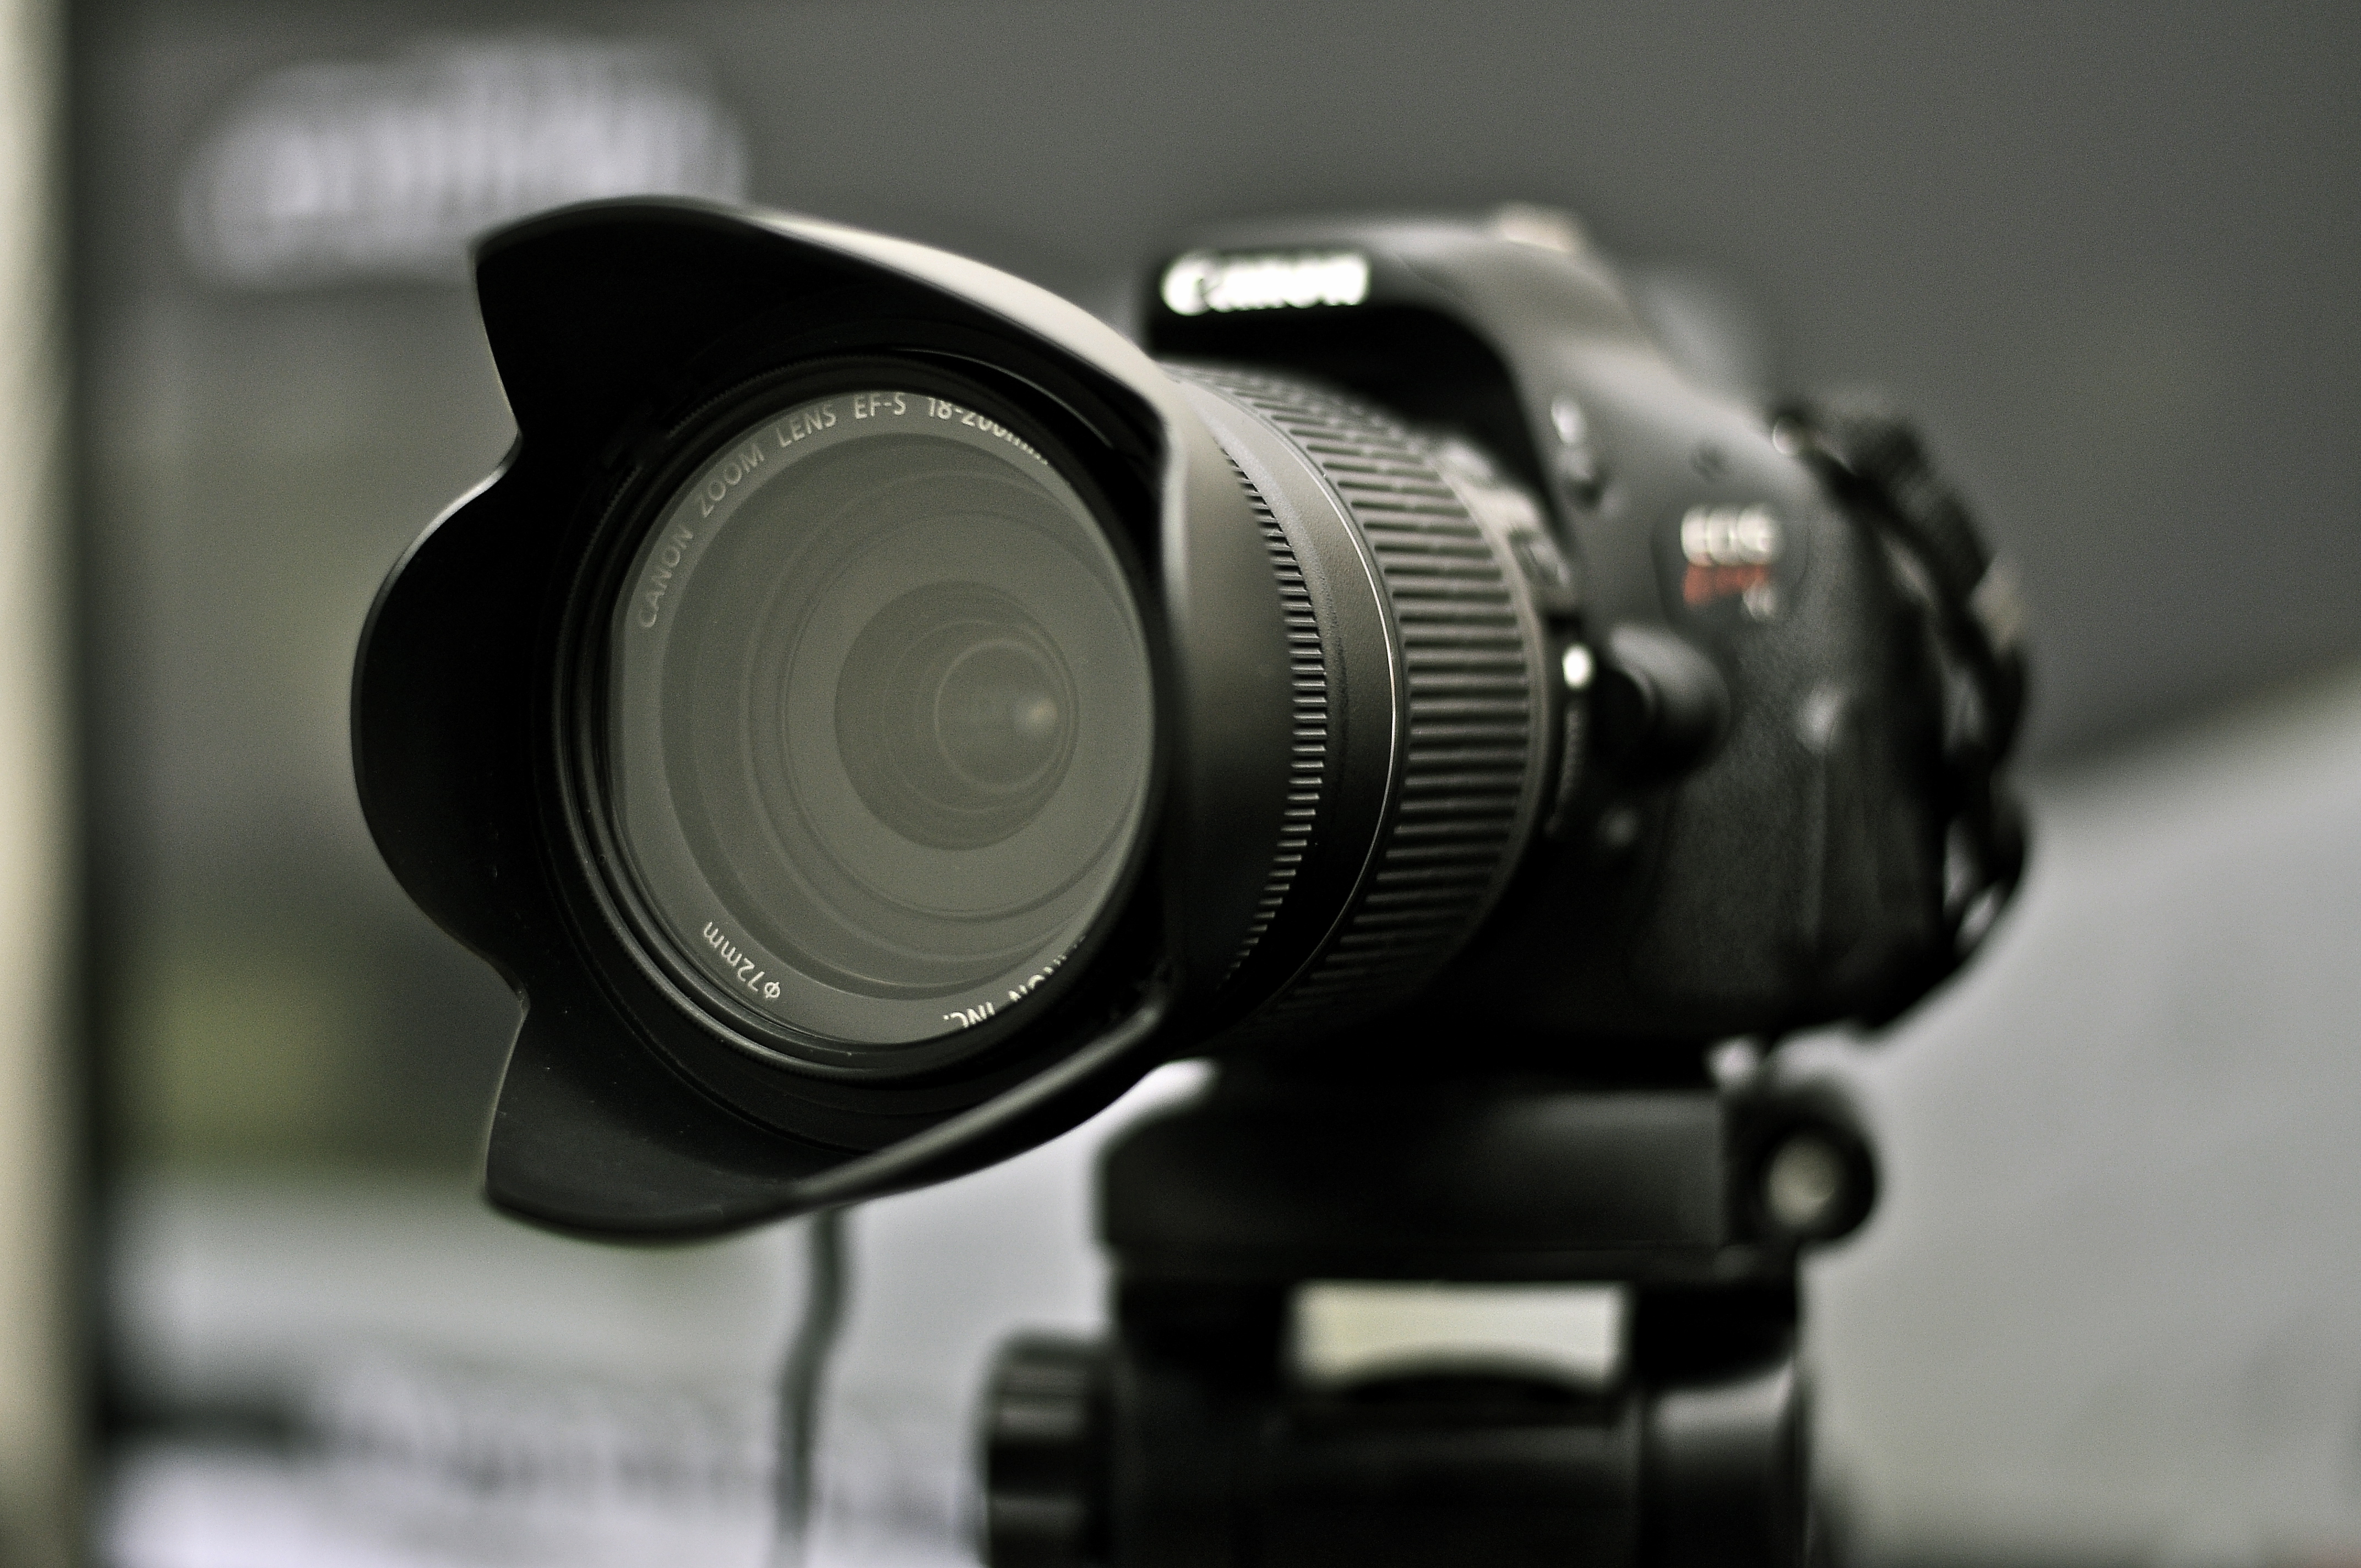 macchina fotografica wallpaper hd,telecamera,lenti della macchina fotografica,lente,fotocamera reflex a obiettivo singolo,camera digitale